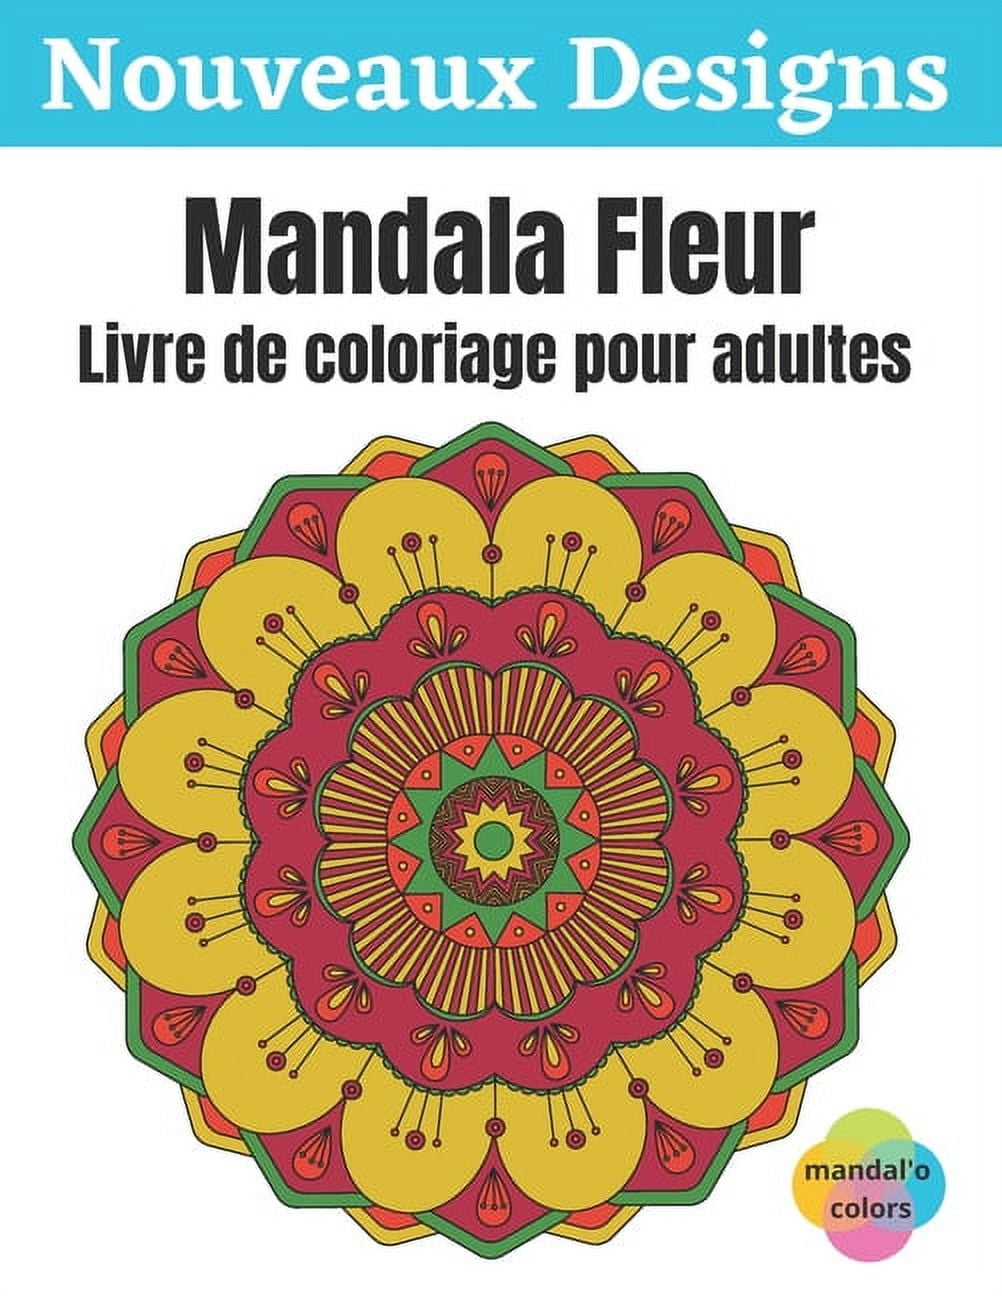 Mandala Fleur - Livre de coloriage pour adultes: Mandala fleur à